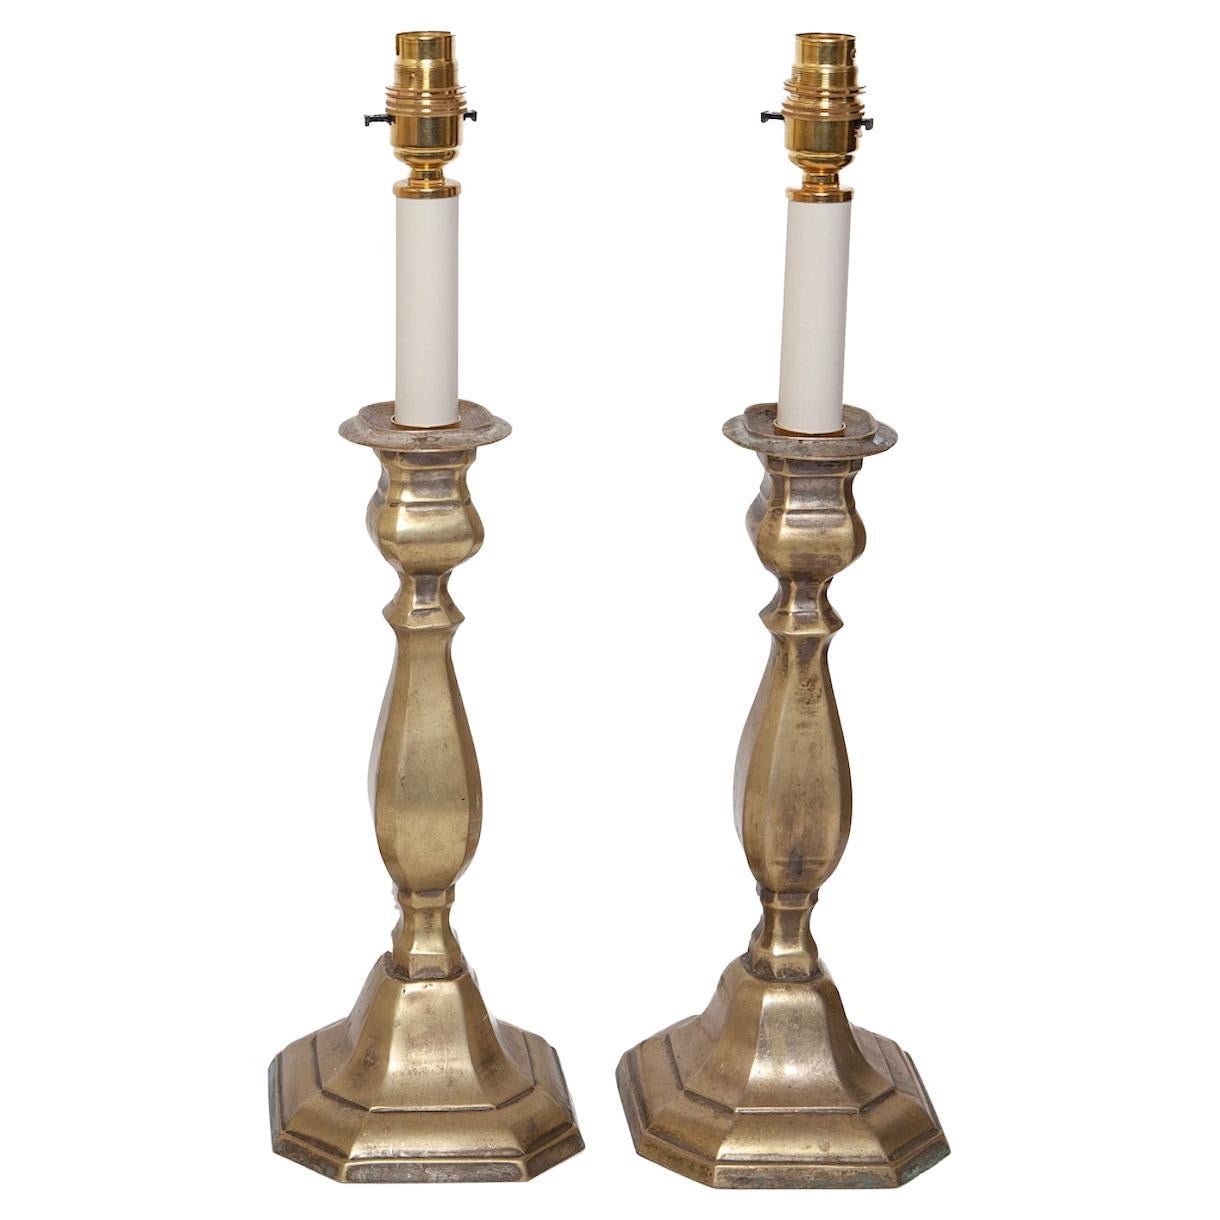 Lampe de table Paire de chandeliers Laiton Tourné 46cm, 18 Haut